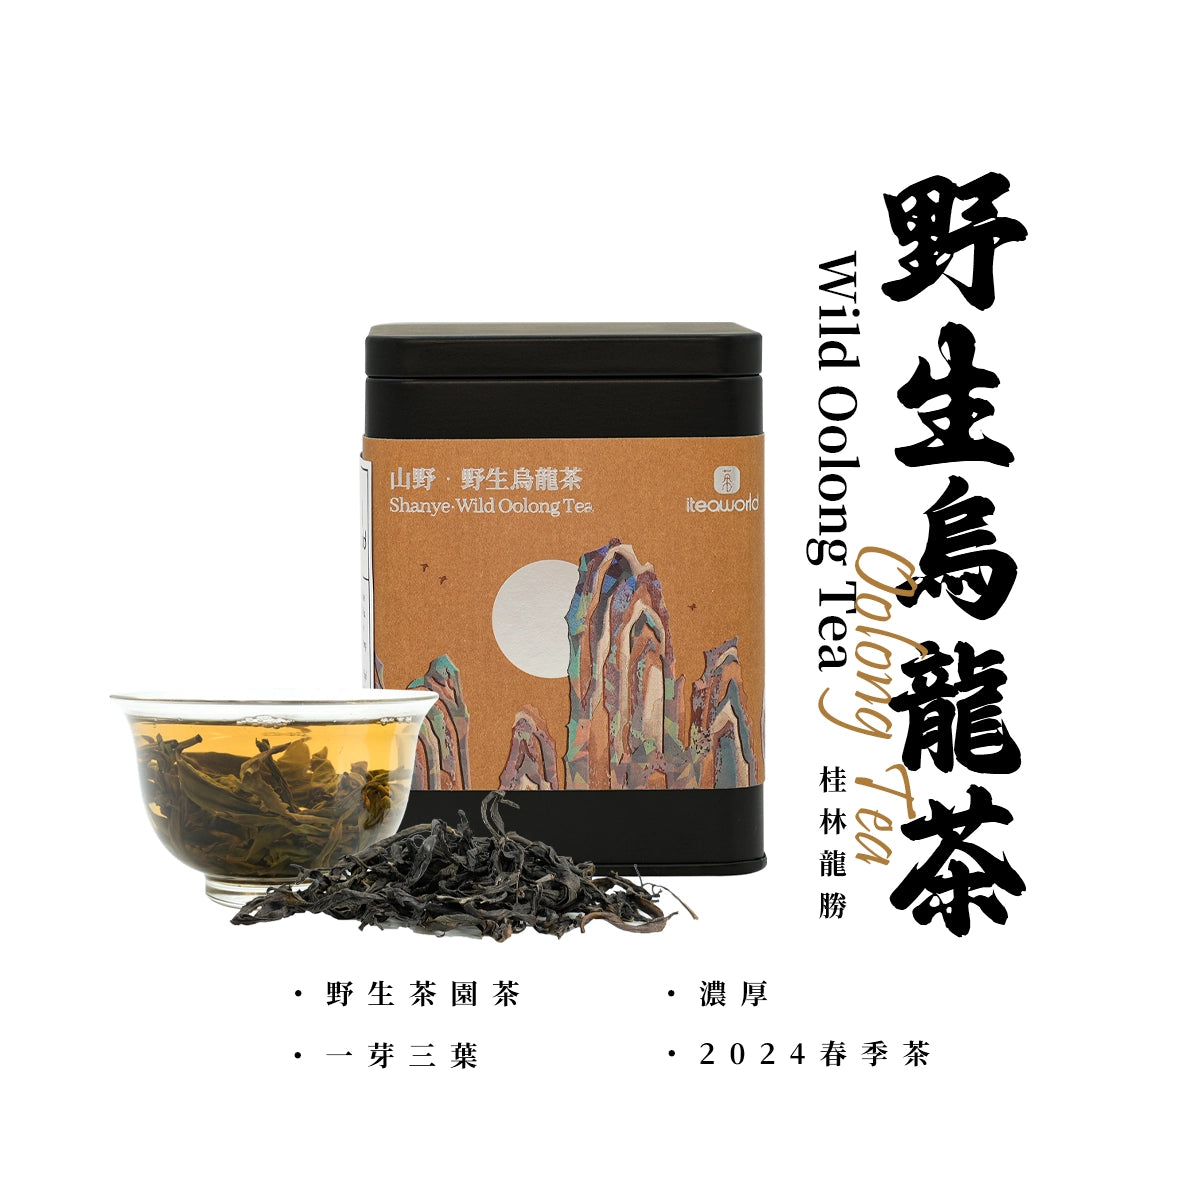 Limited Time Offer: New Wild Tea & Jasmine Tea & Oolong Tea & Tea Sampler Sets